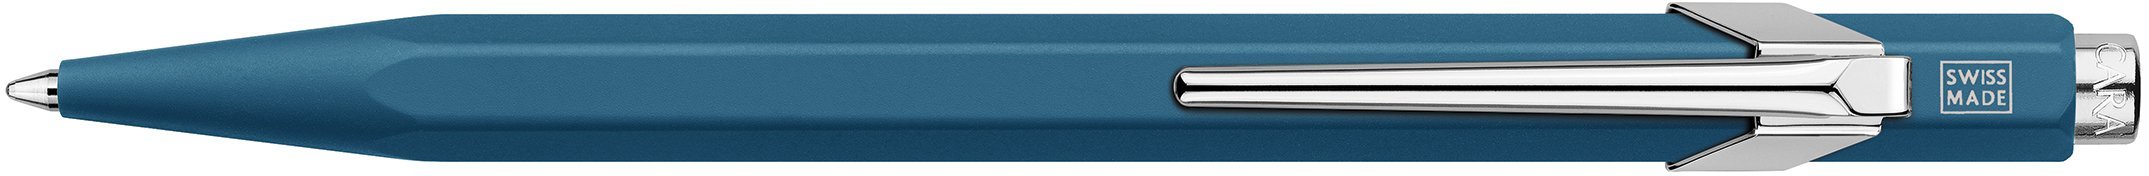 Шариковая ручка Caran d'Ache Office Paul Smith 2, Peacock Blue в подарочной коробке